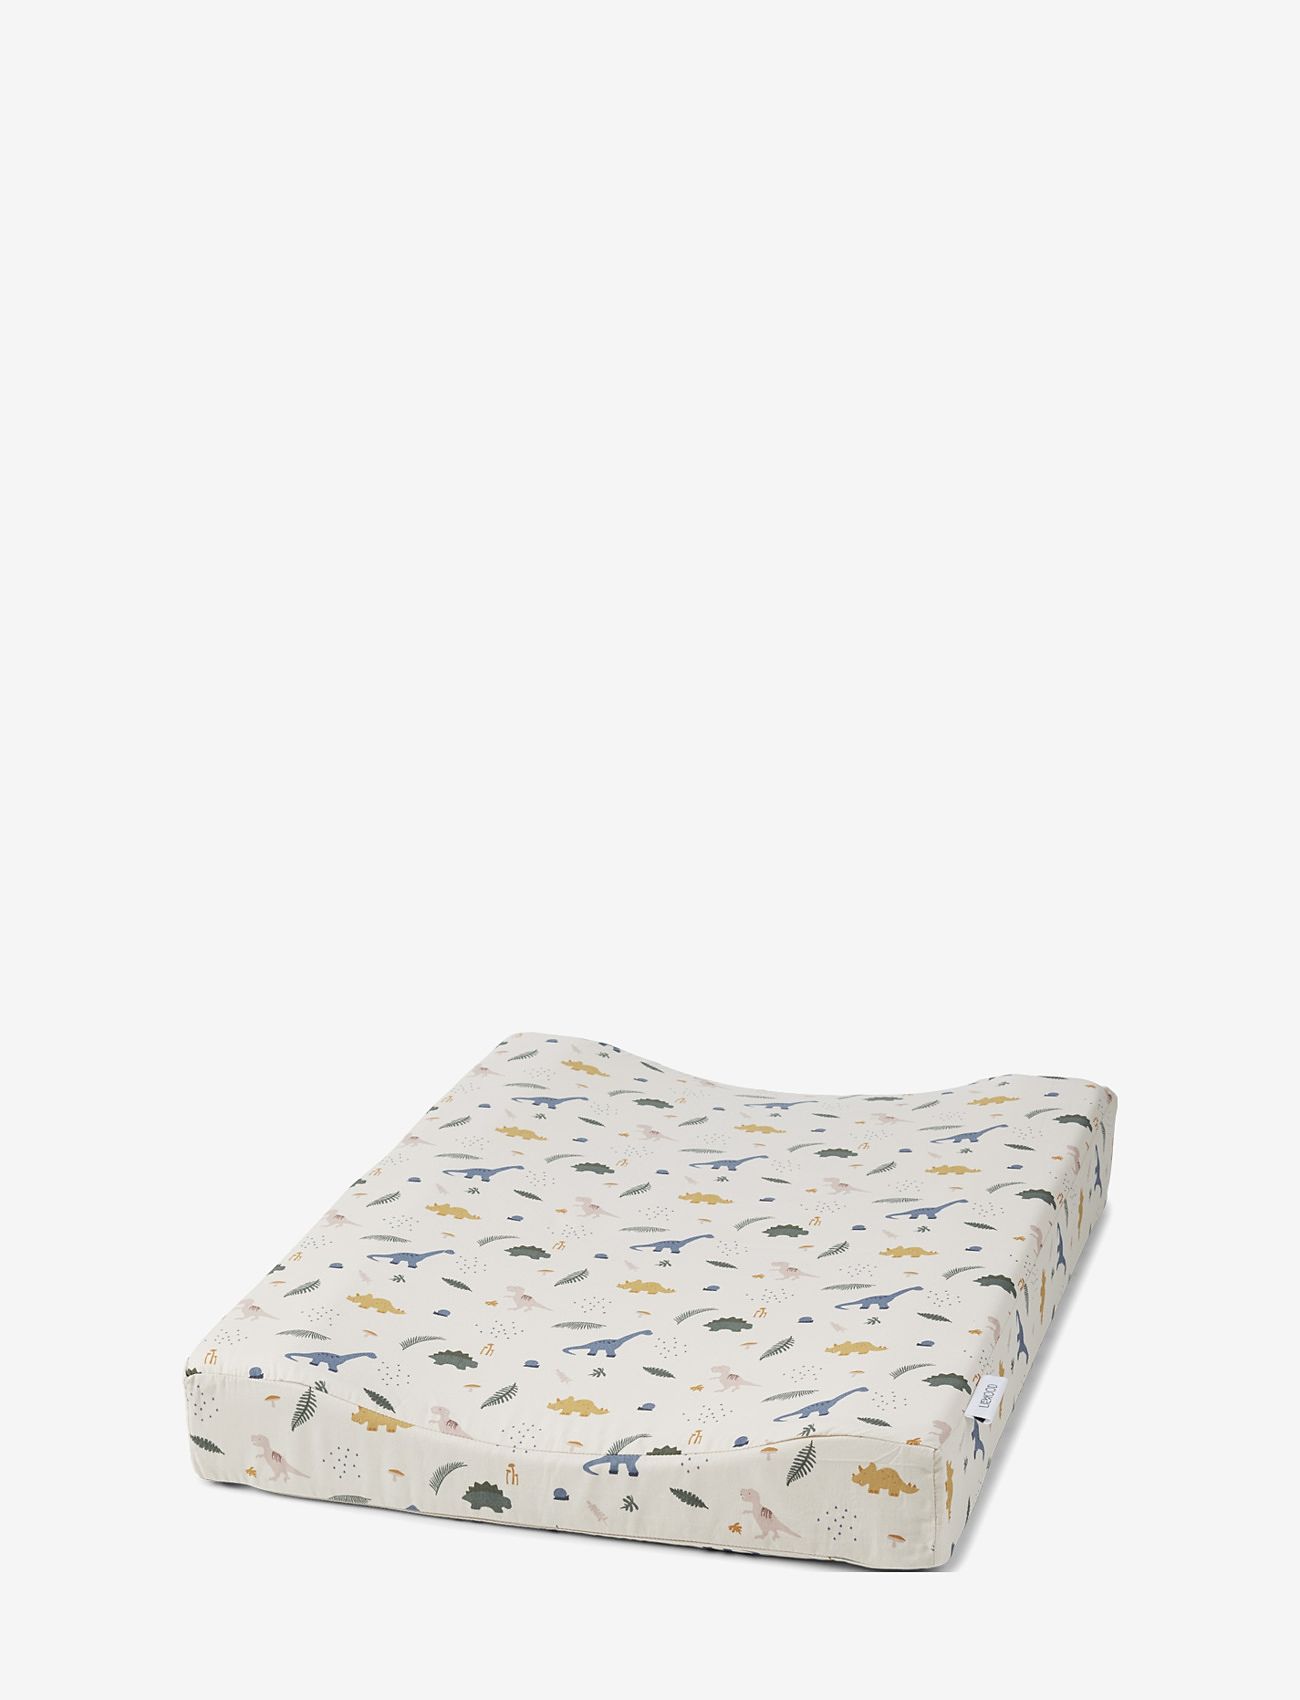 baby mattress 100 x 50